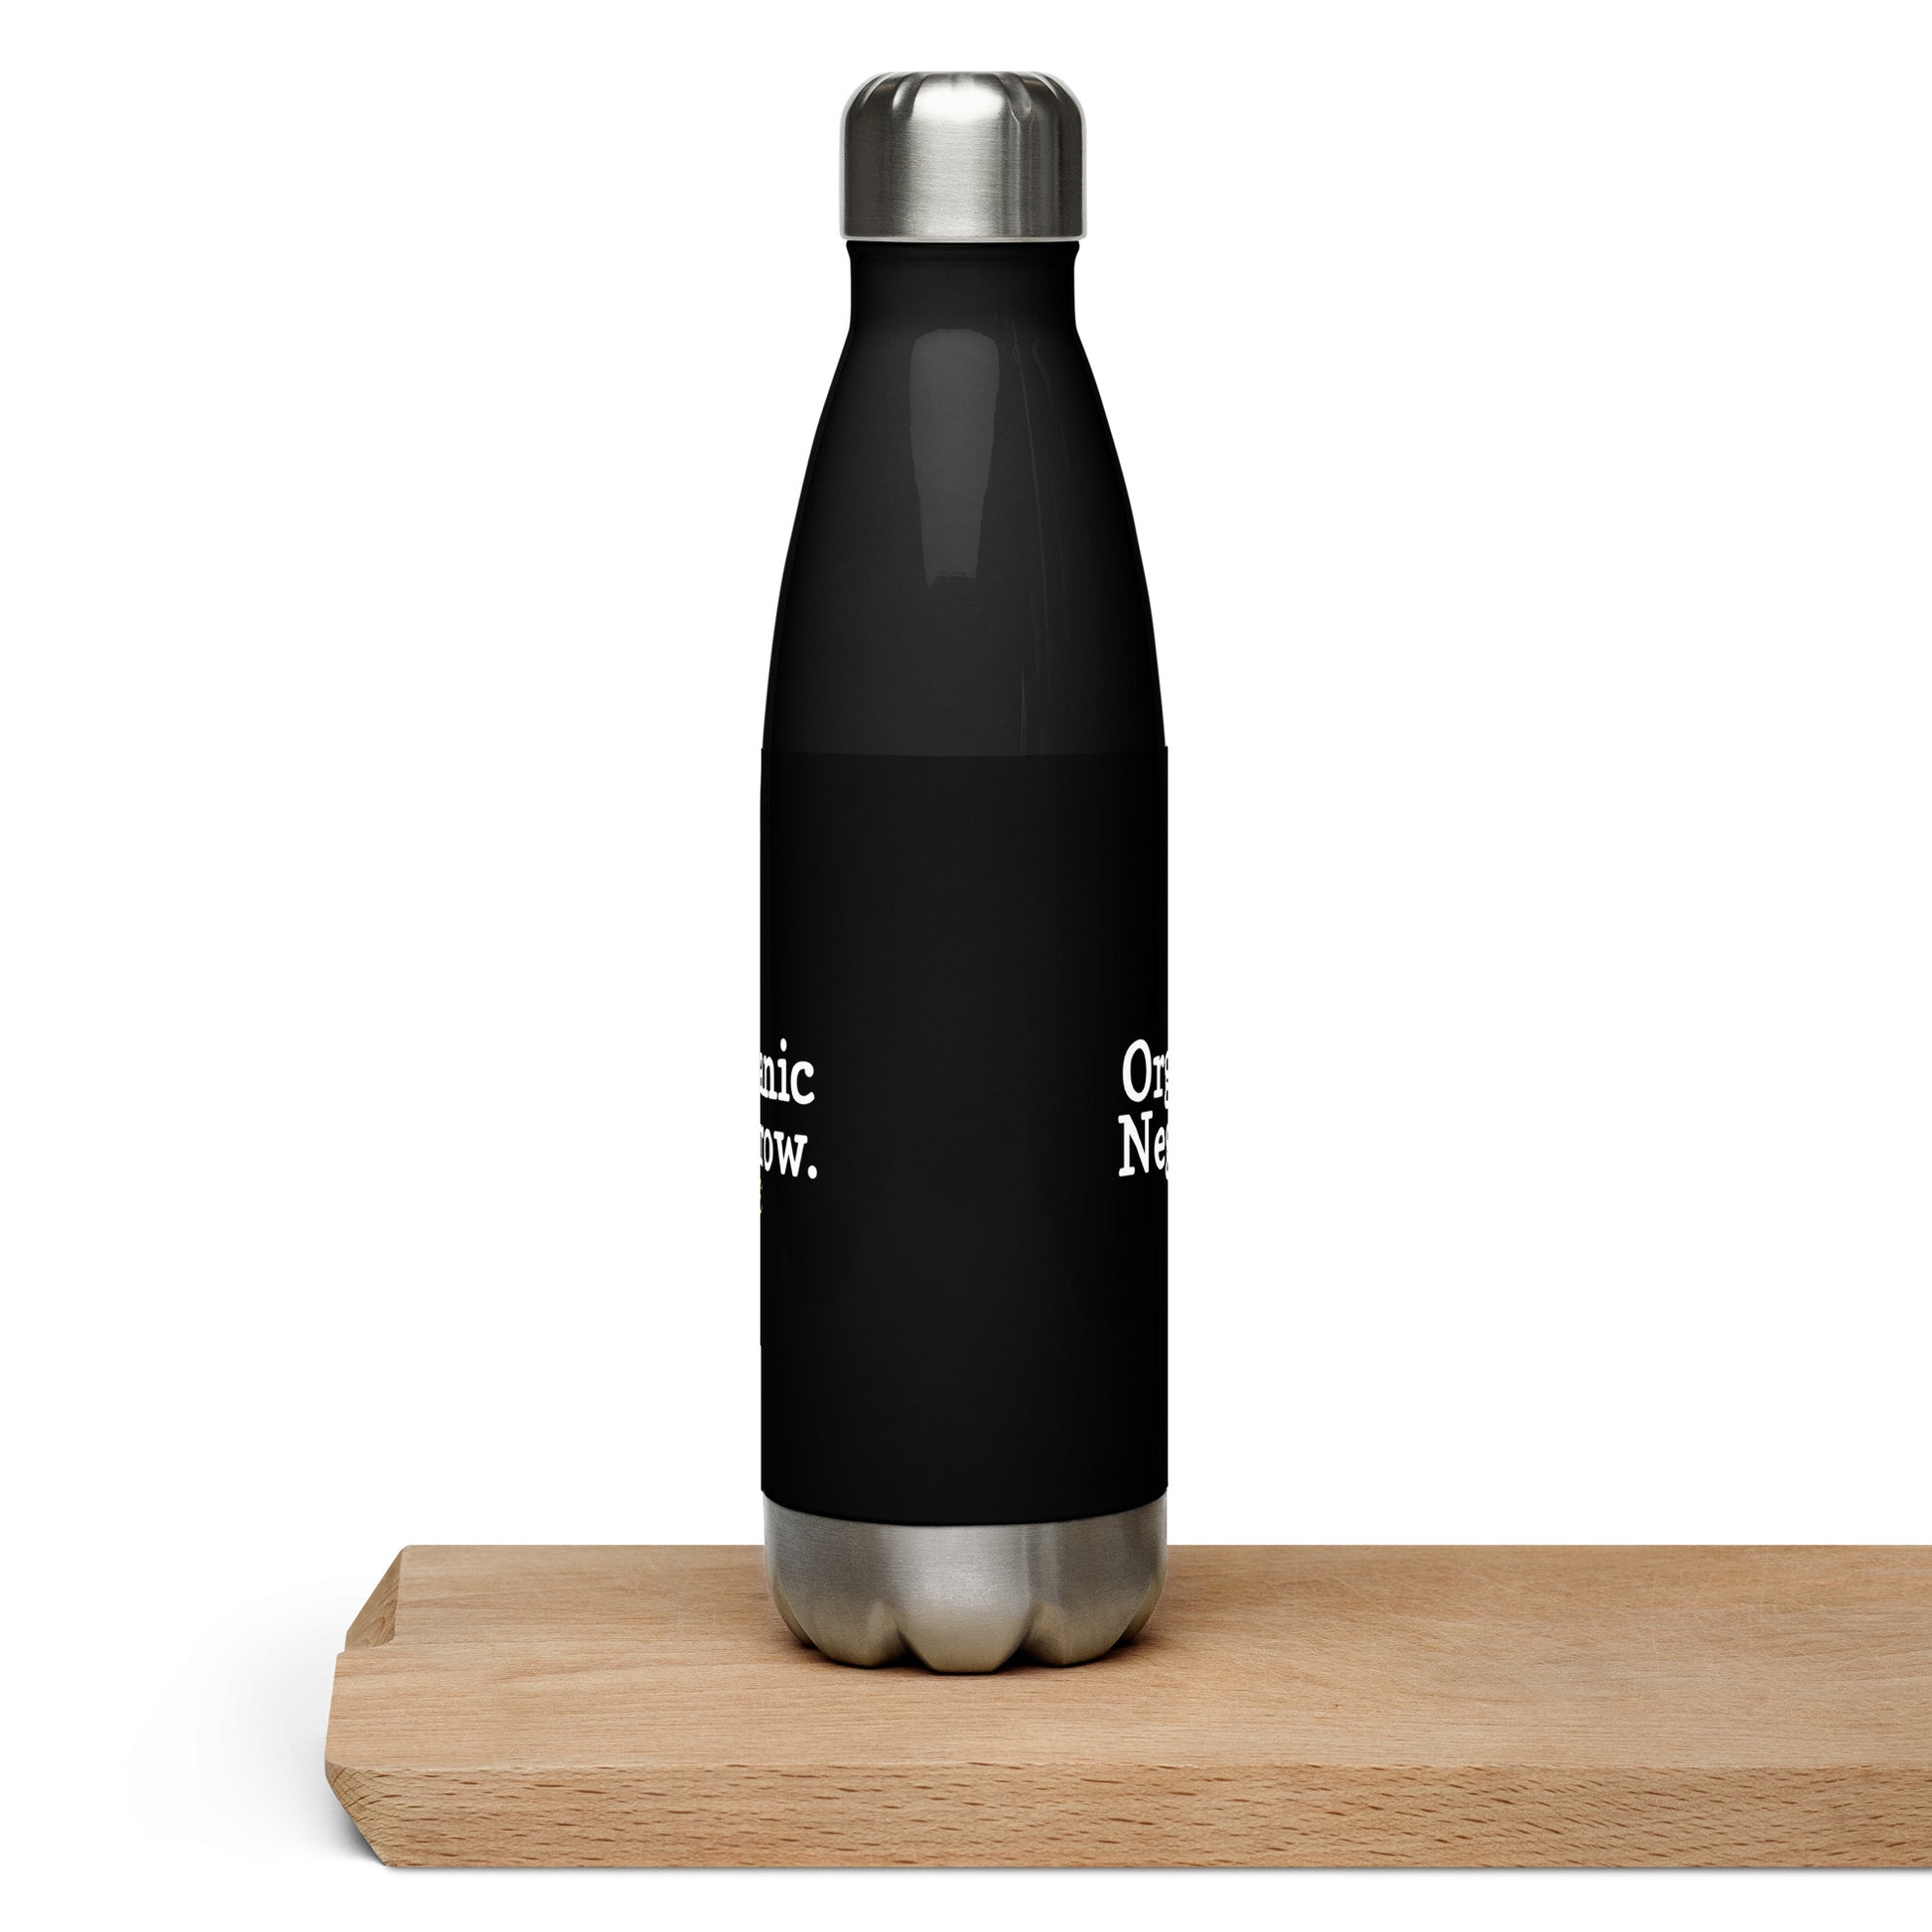 Organic Negrow water bottle / Stainless steel water bottle